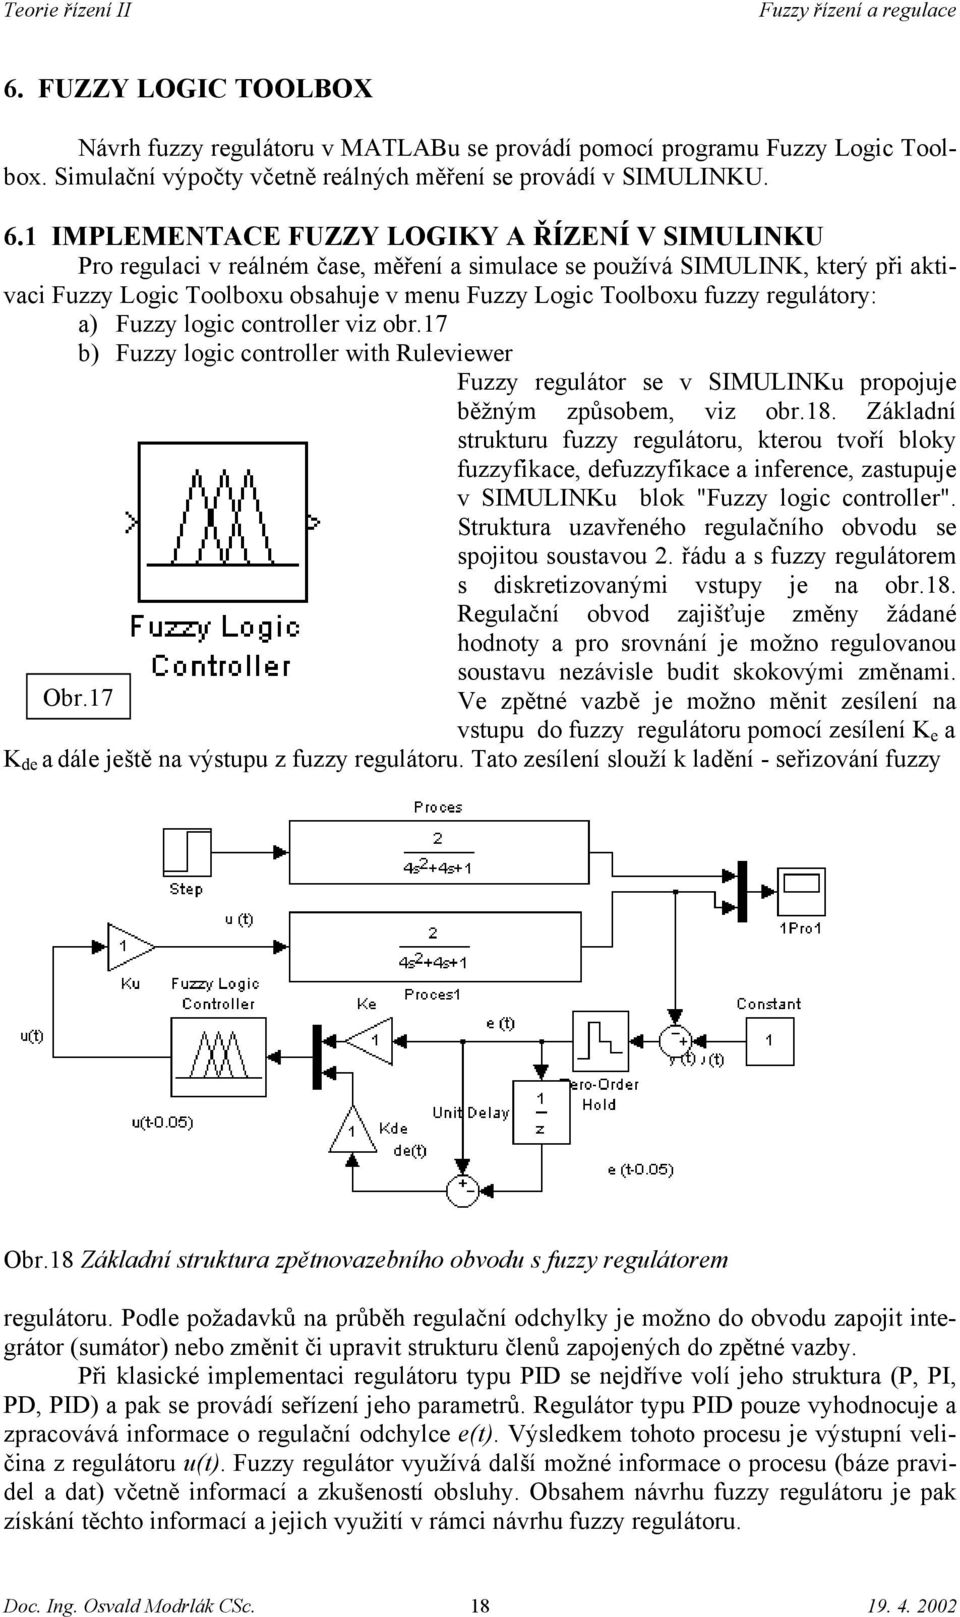 regulátory: a) Fuzzy logic controller viz obr.17 b) Fuzzy logic controller with Ruleviewer Fuzzy regulátor se v SIMULINKu propojuje běžným způsobem, viz obr.18.